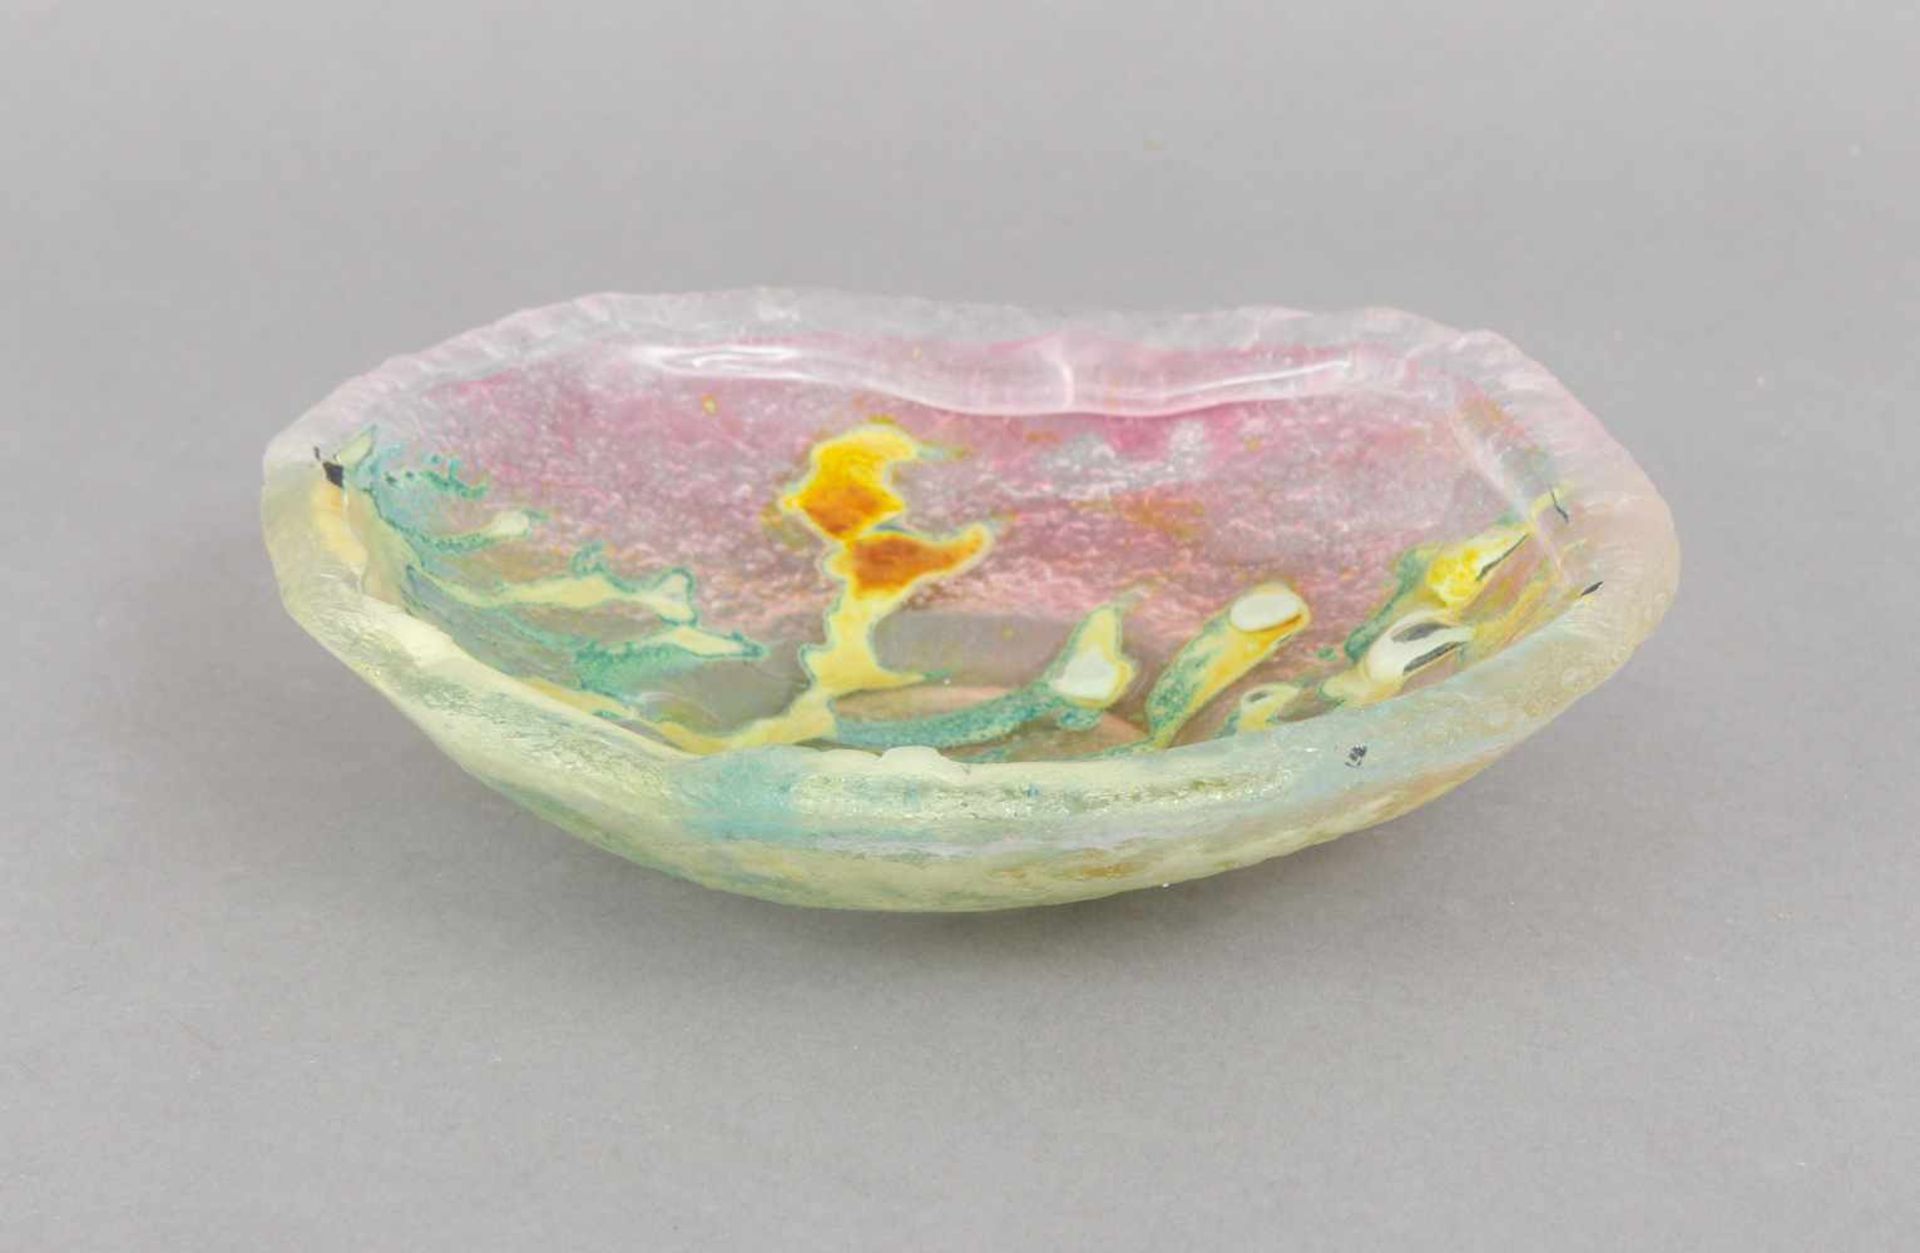 Pate-de-verre Glasschaleunbekannte Manufaktur/Glaskünstler, runde, wellige Schale mit farbigen